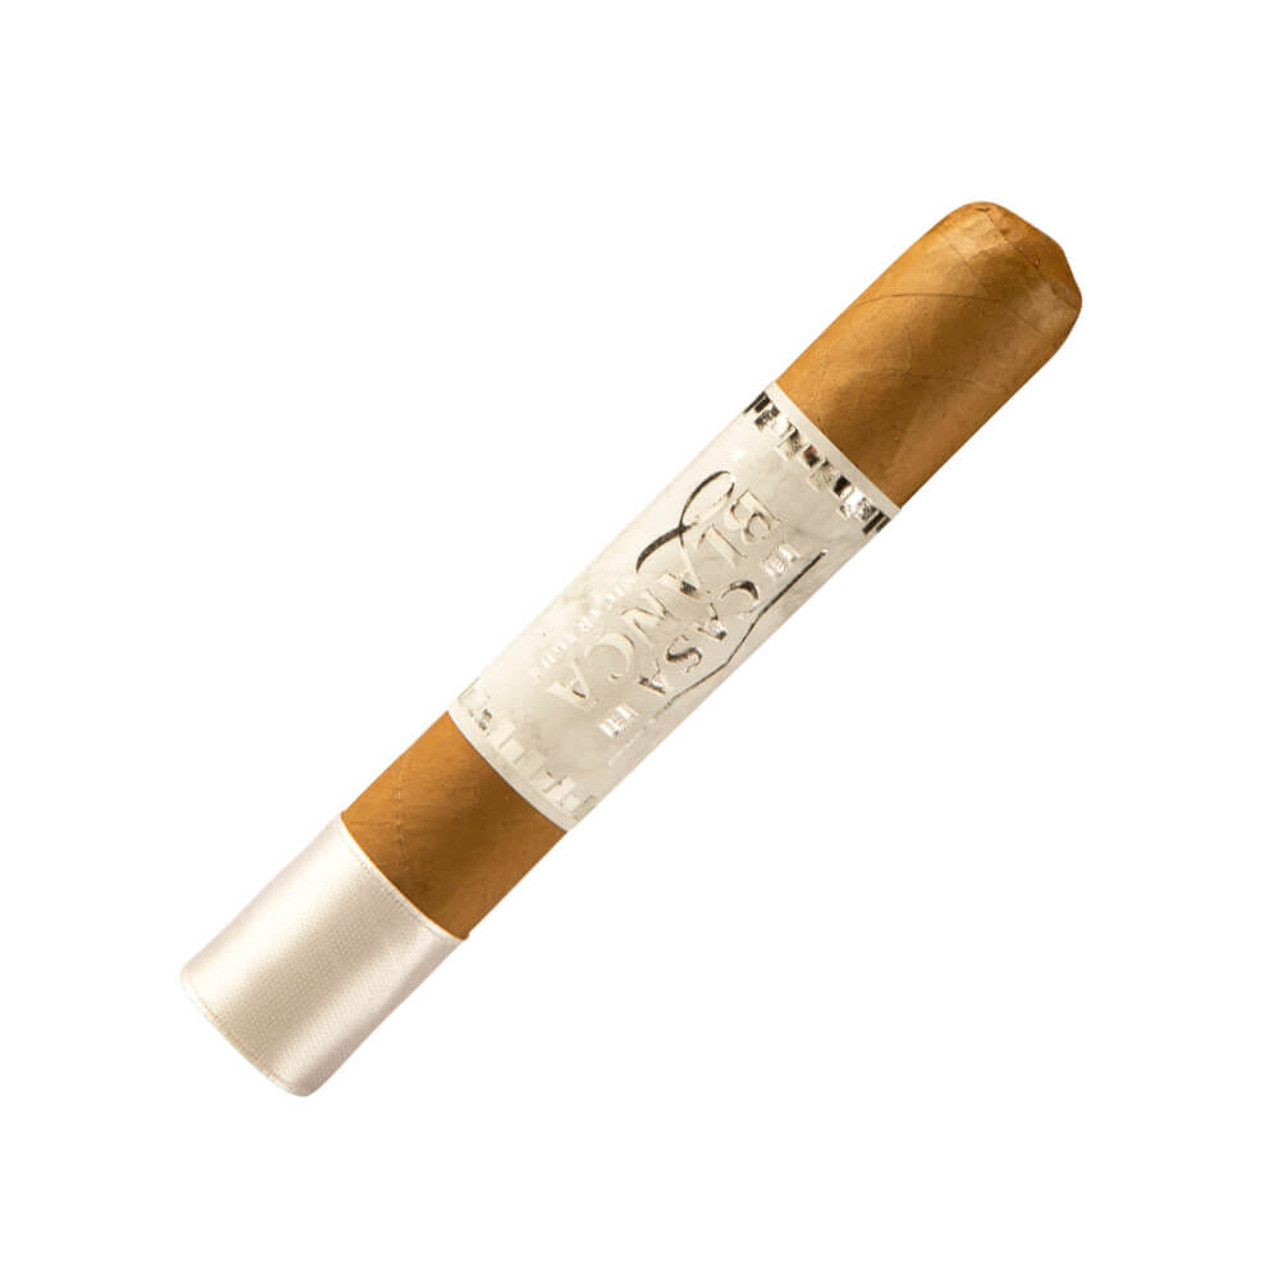 Casa Blanca Nicaragua Robusto Natural Cigars - 5 x 52 (Box of 20)